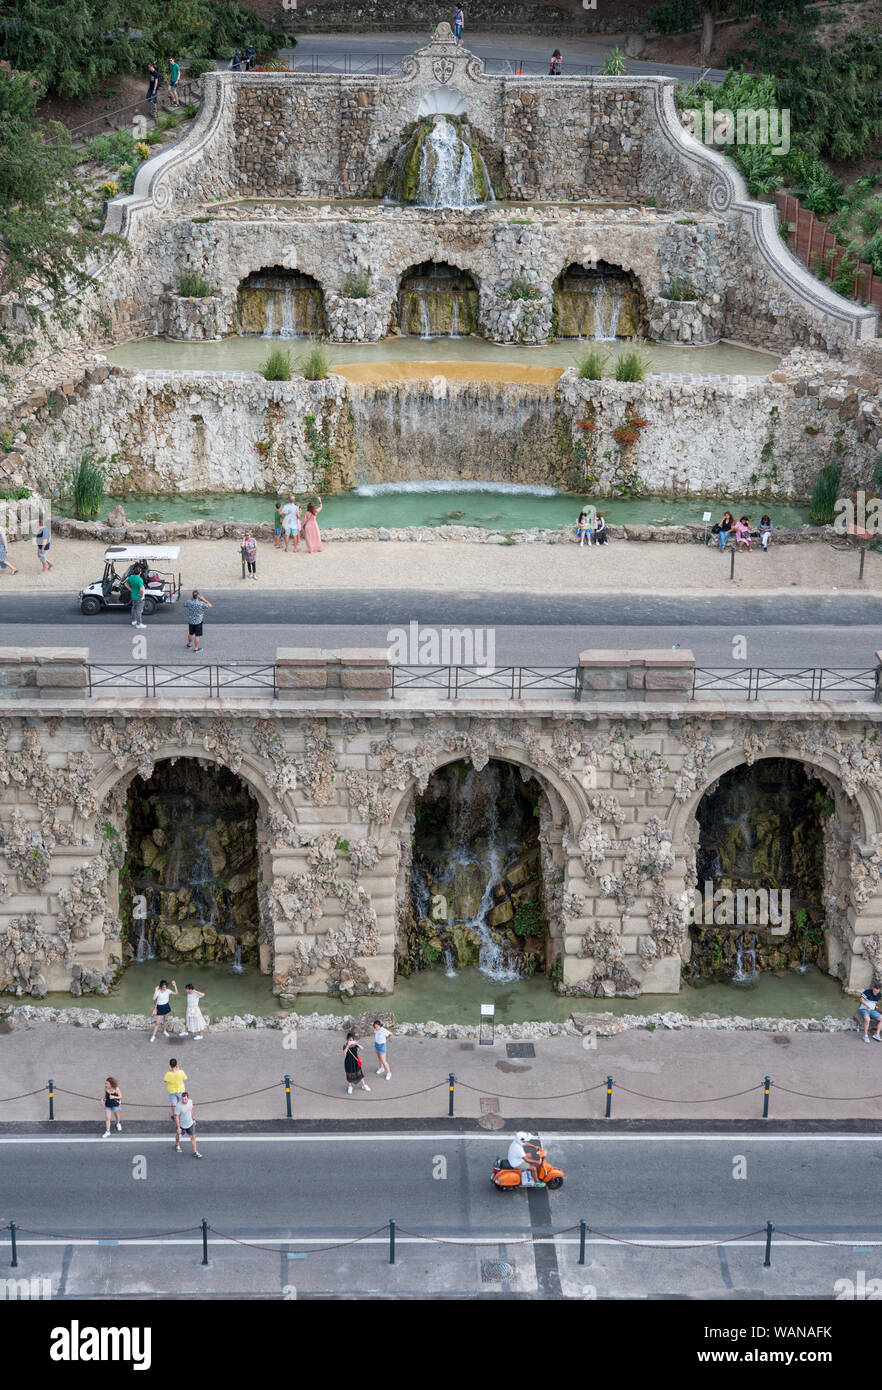 Firenze, Italia - 2019, agosto 16: il Poggi di rampe (Rampe del Poggi) con la bella fontana system, è un iconico punto di riferimento fiorentino. Foto Stock